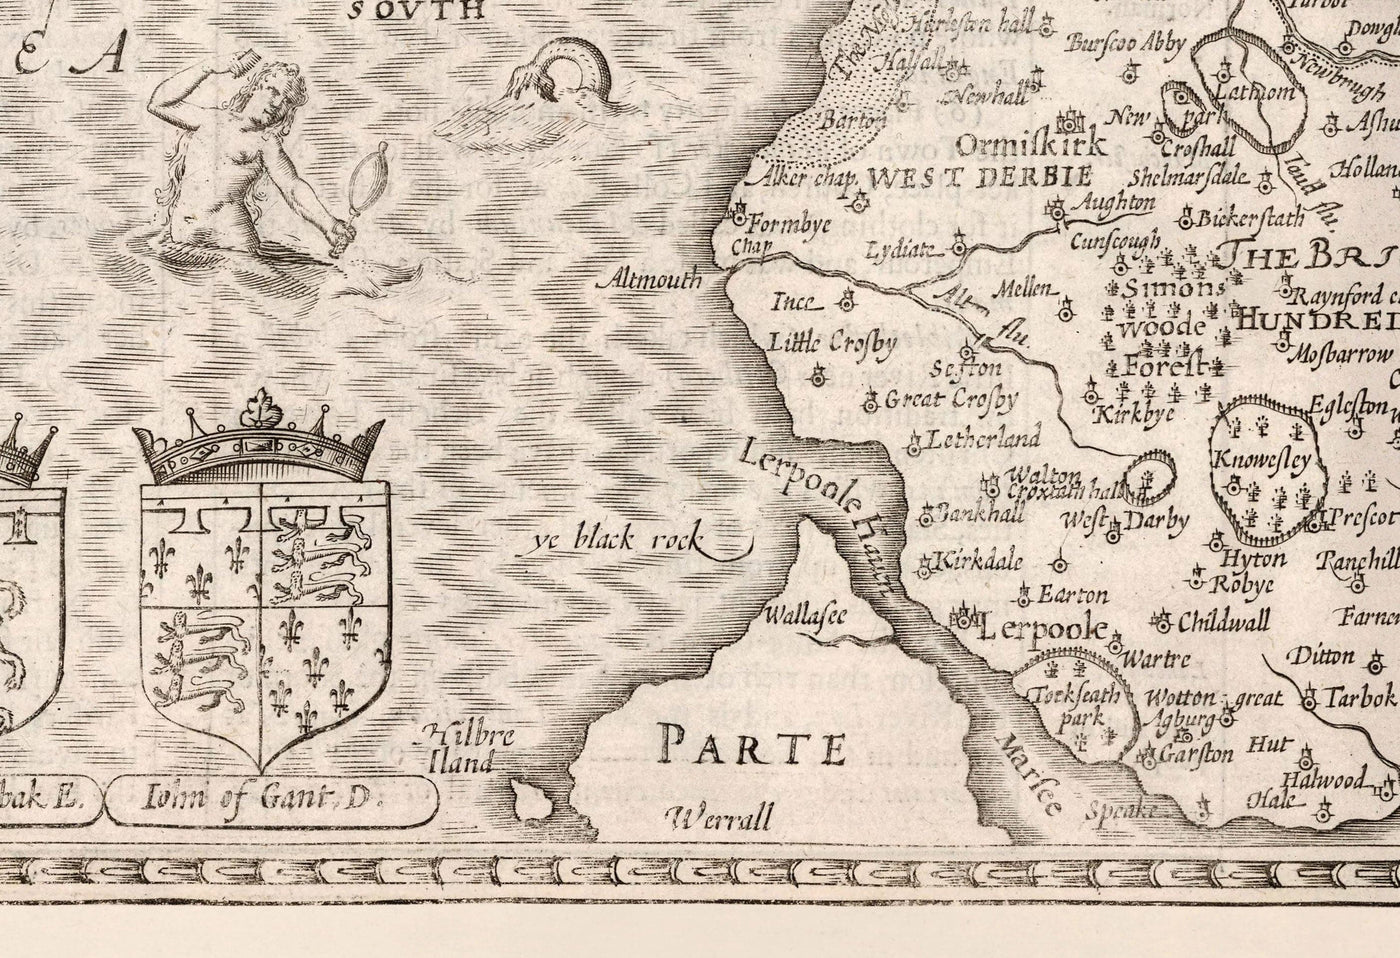 Alte Karte von Lancashire, 1611 von John Speed ​​- Manchester, Liverpool, Preston, Blackburn, Burnley